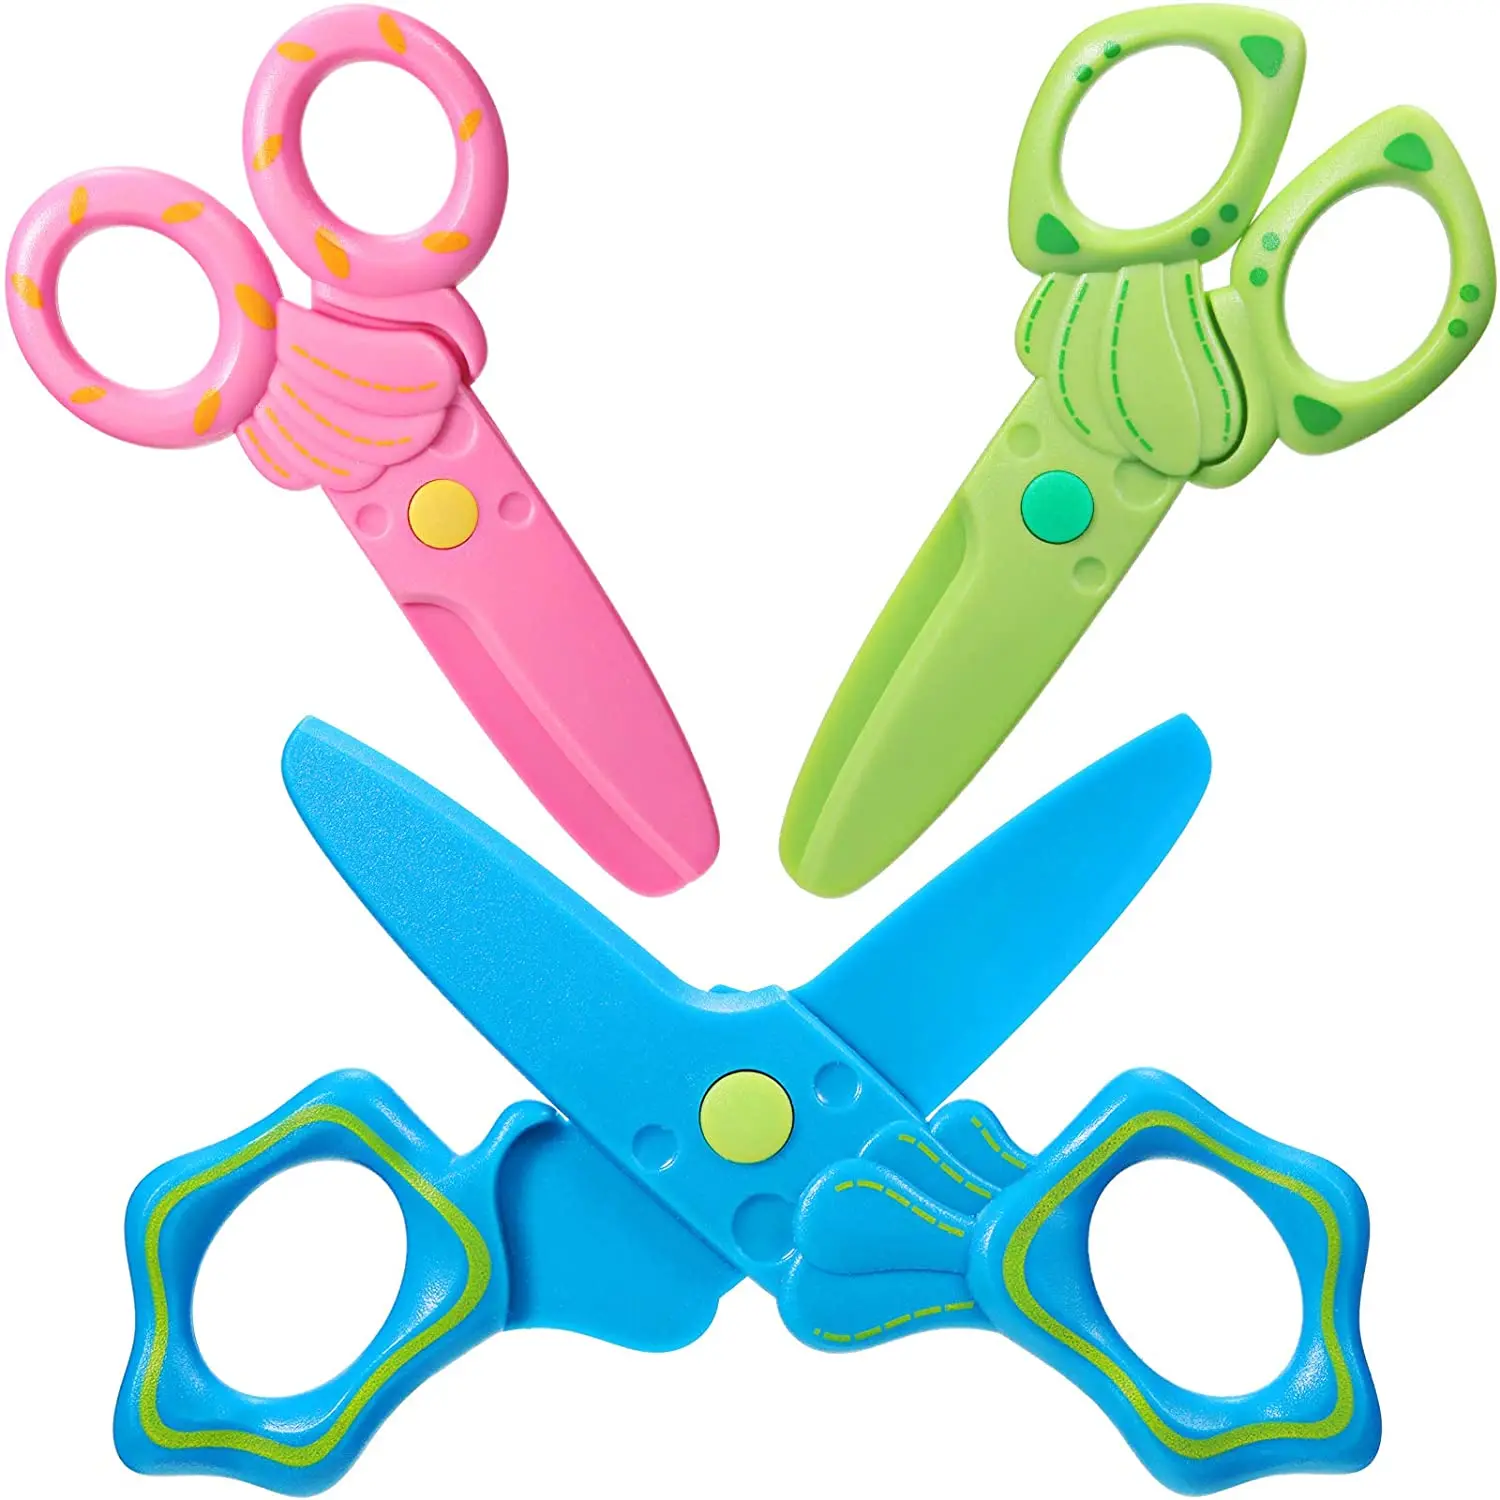 Kid Safety Scissors